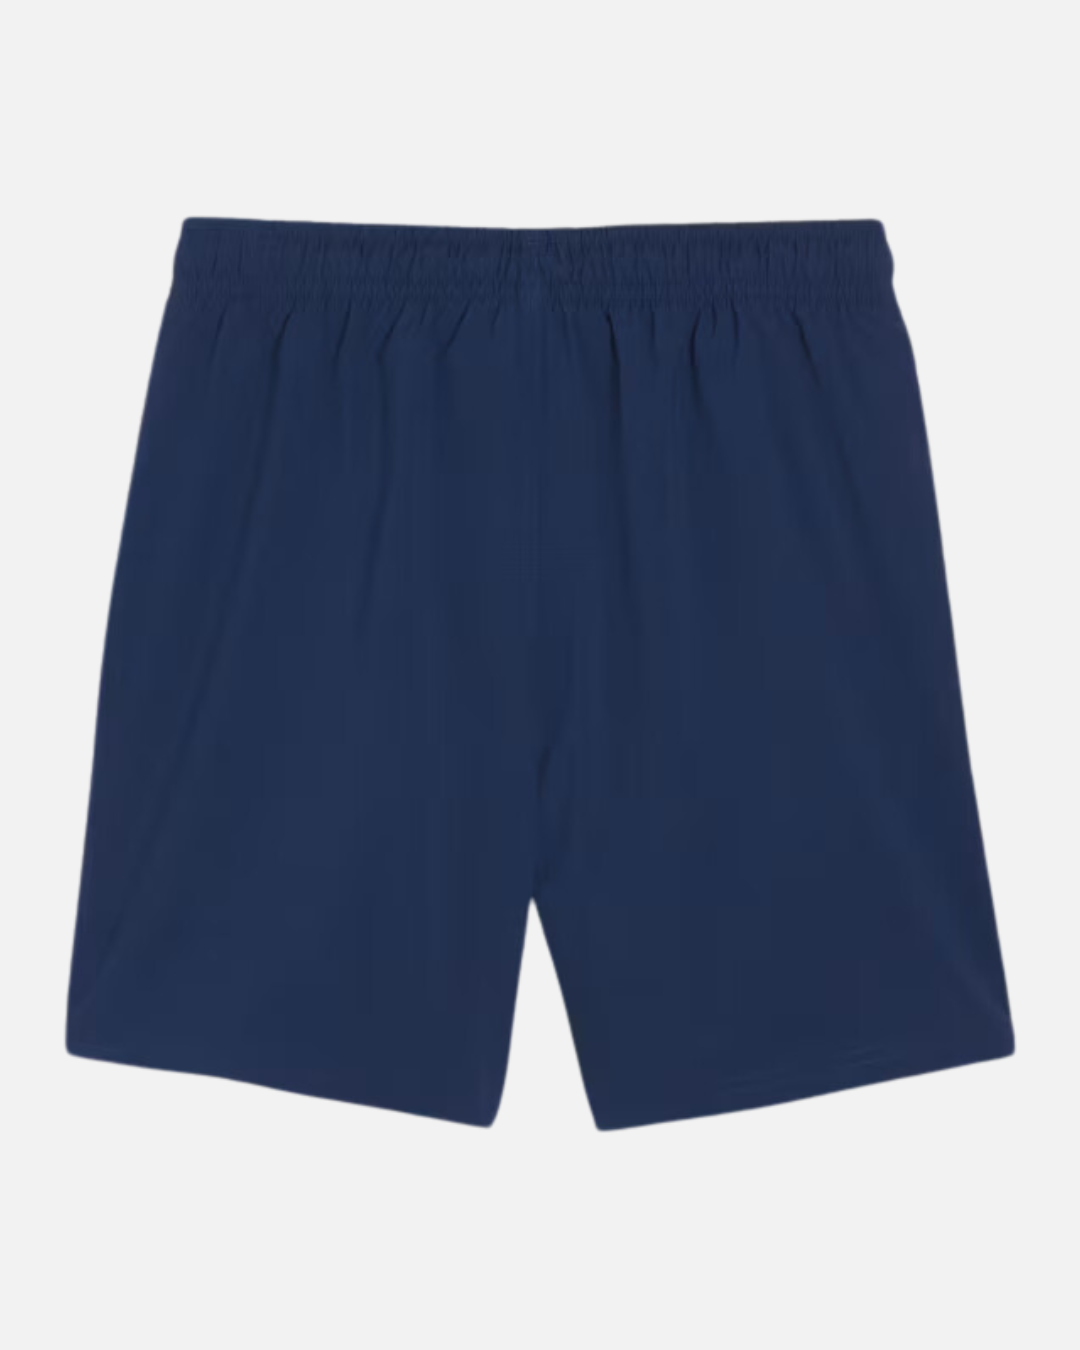 OM 2023/2024 Shorts - Blue/White